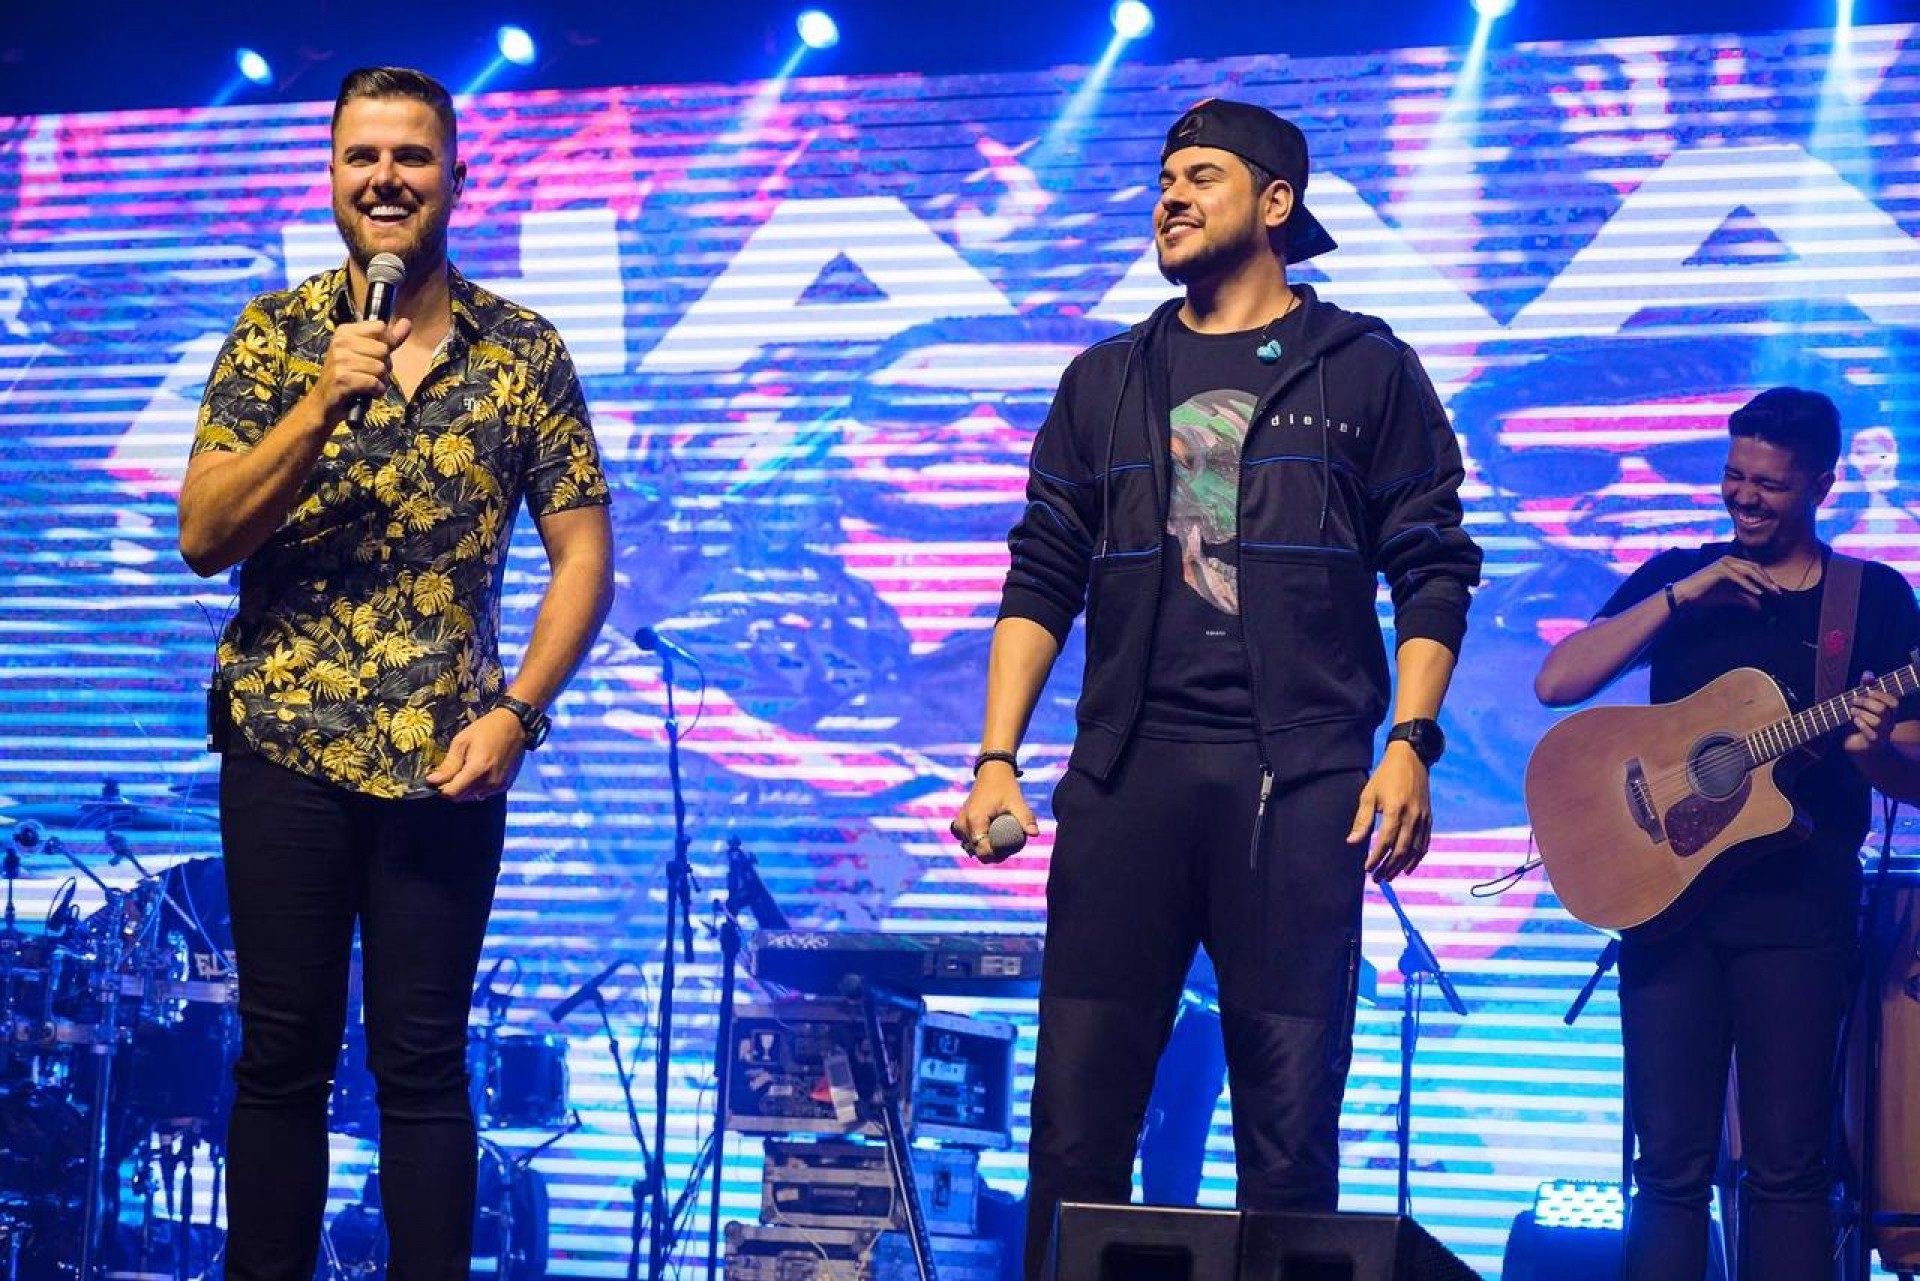 A dupla sertaneja lançará em outubro o álbum 'Chaaama' - Ale Santos e Diego Nata